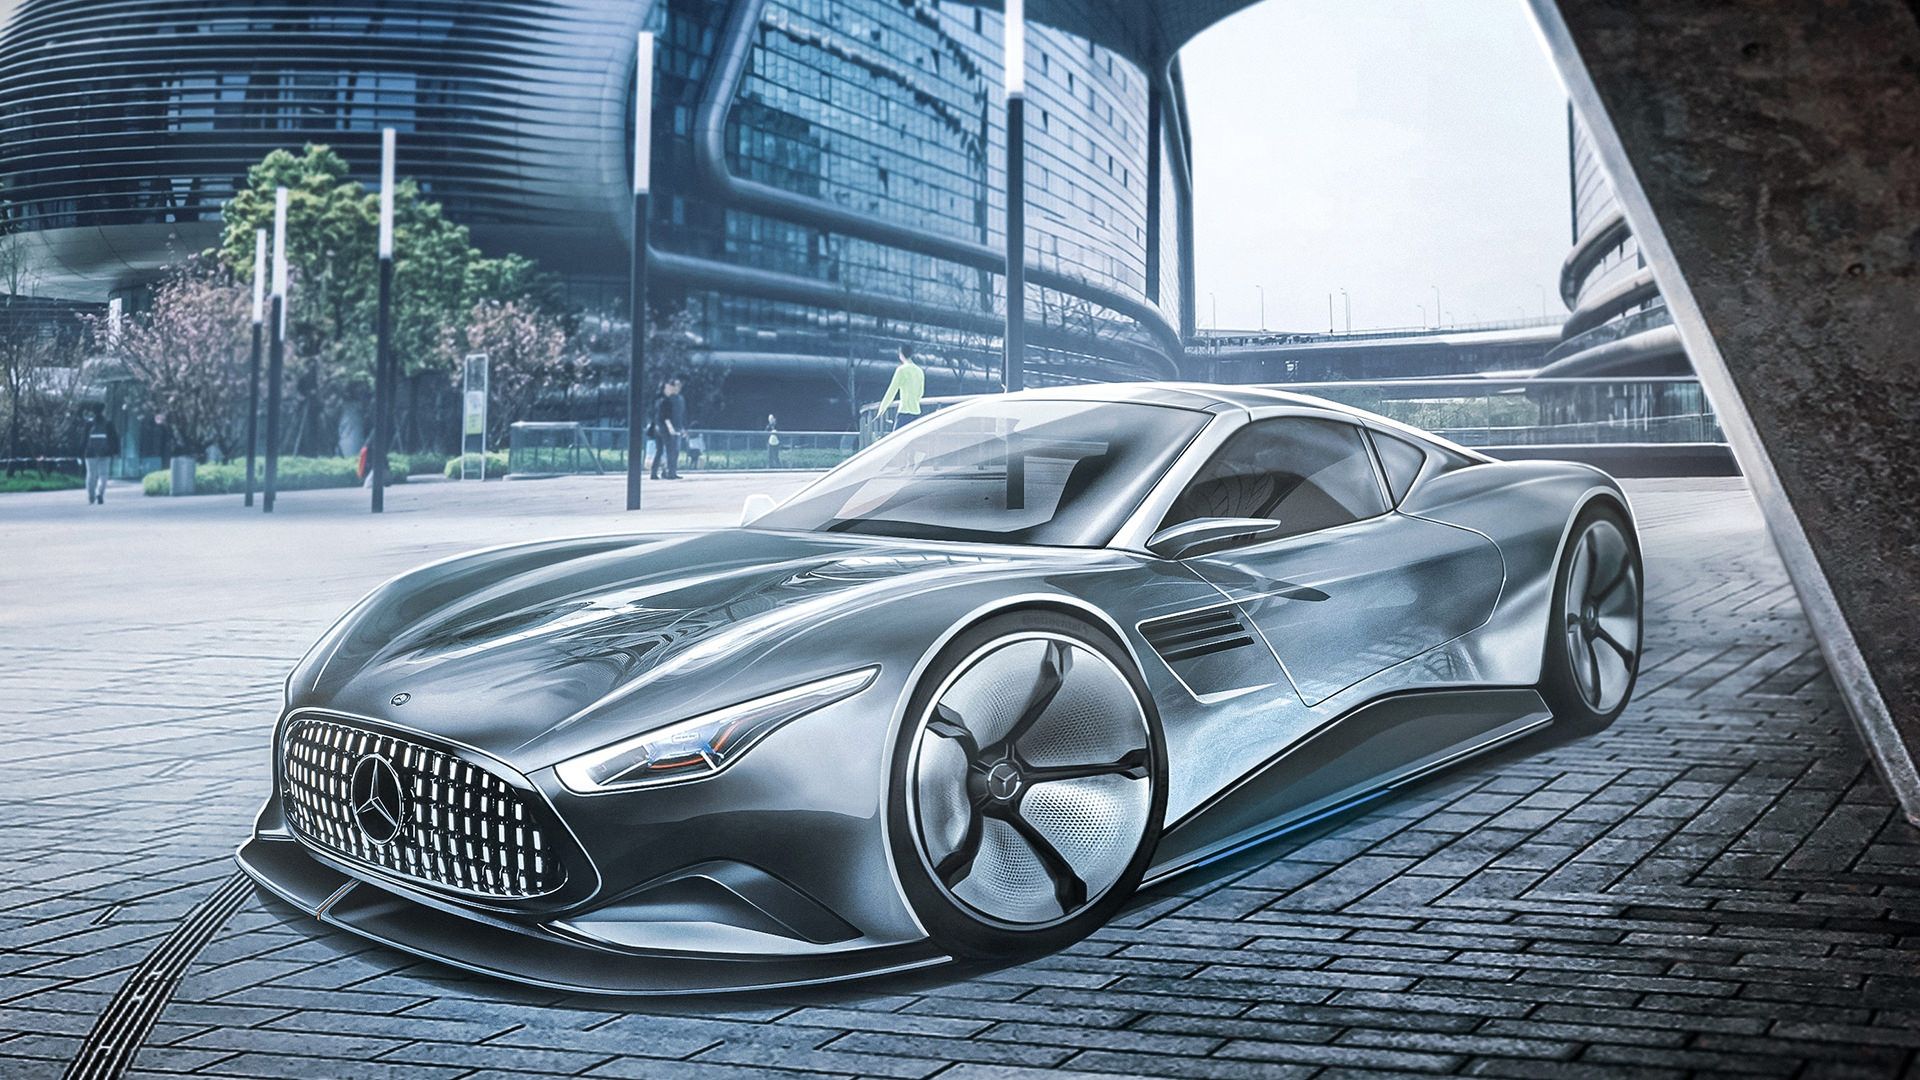 رندر ۲۰۵۰ مرسدس بنز اس ال / Mercedes Benz SL 2050 render